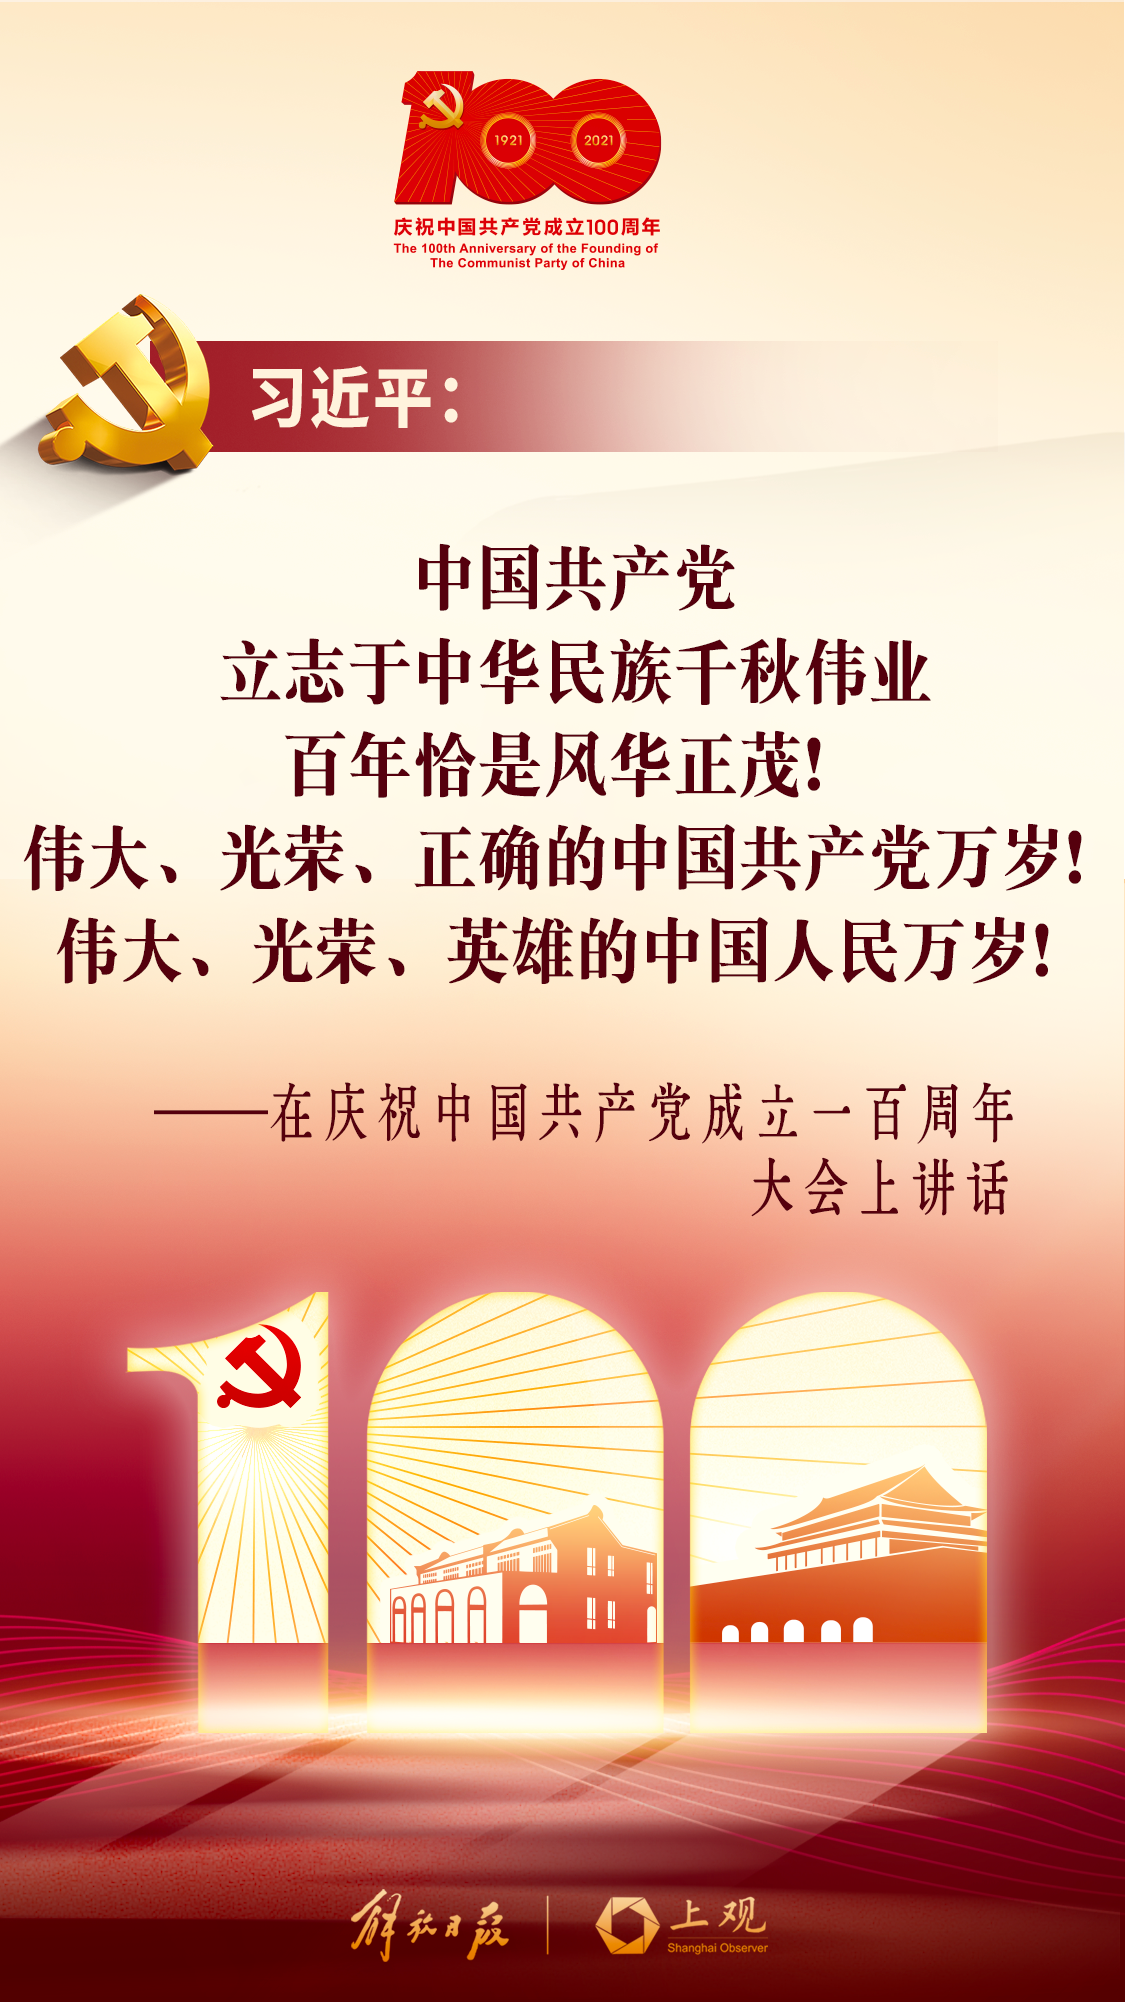 【海报速览】百年恰是风华正茂,中华民族伟大复兴的中国梦一定能够